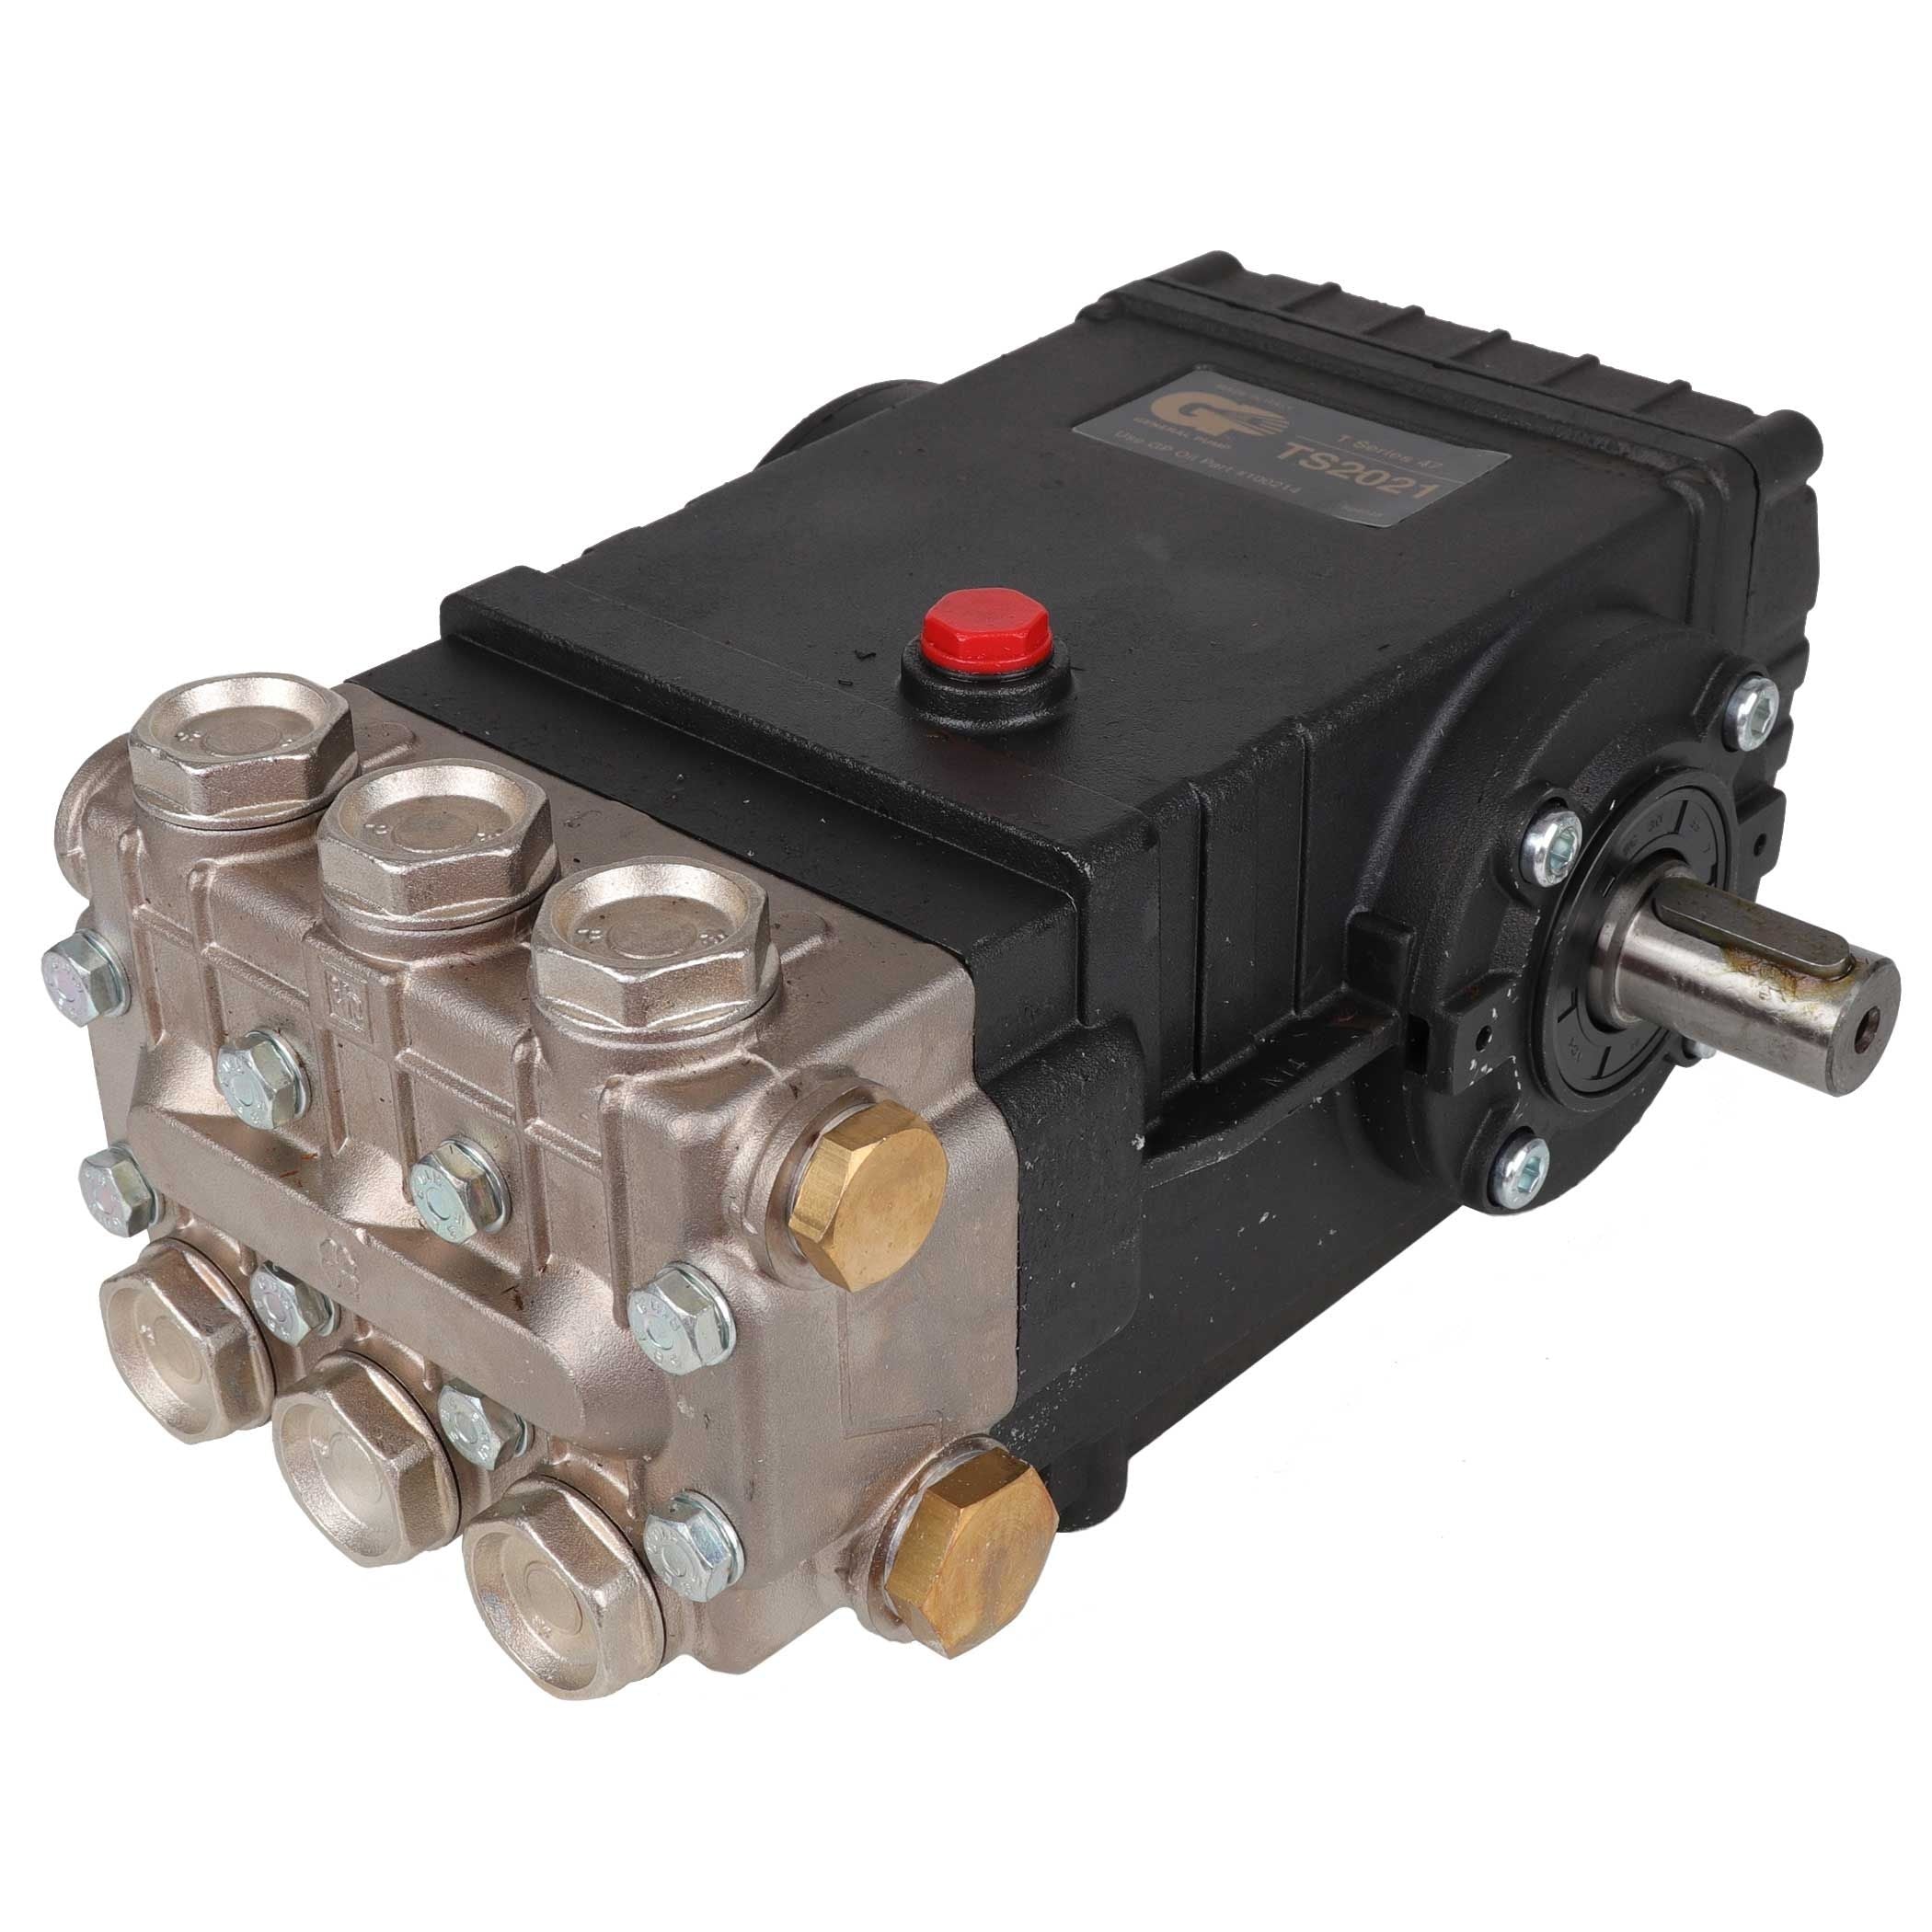 General Pump TS2021 Pressure Washer Pump, Triplex, 5.6 GPM@3500 PSI, 1450 RPM, 24mm Solid Right Shaft